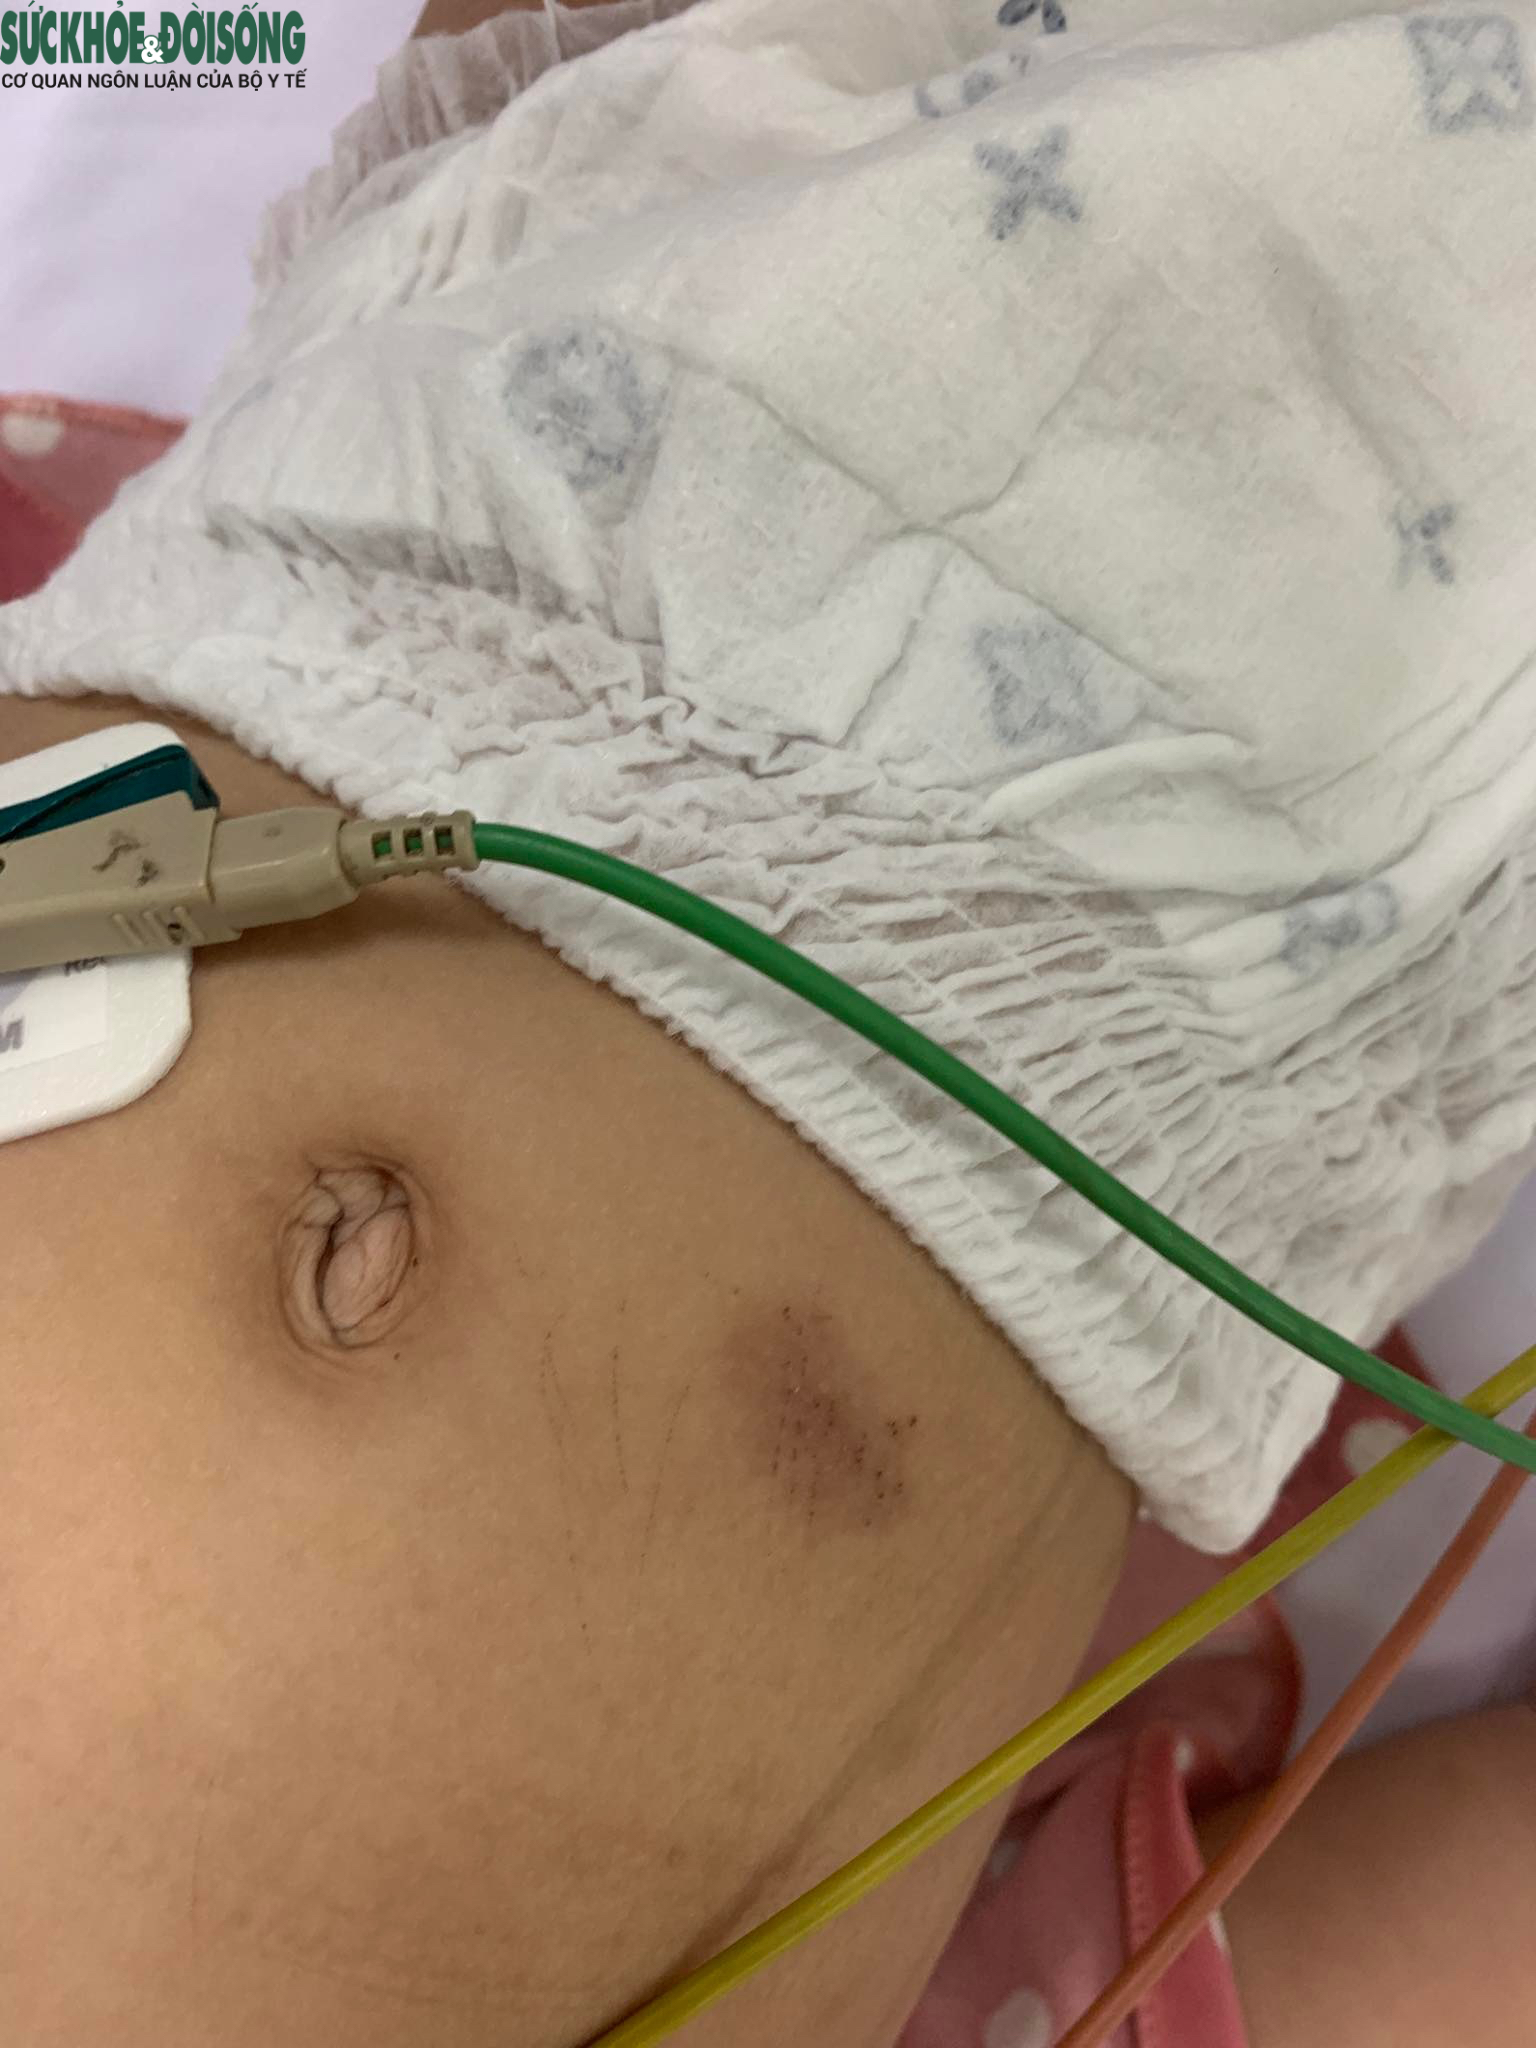 Bé gái 18 tháng tuổi nhập viện trong tình trạng sốt cao, trên người có nhiều vết lằn tổn thương da, nghi do bạo hành. Ảnh Bệnh viện cung cấp. 